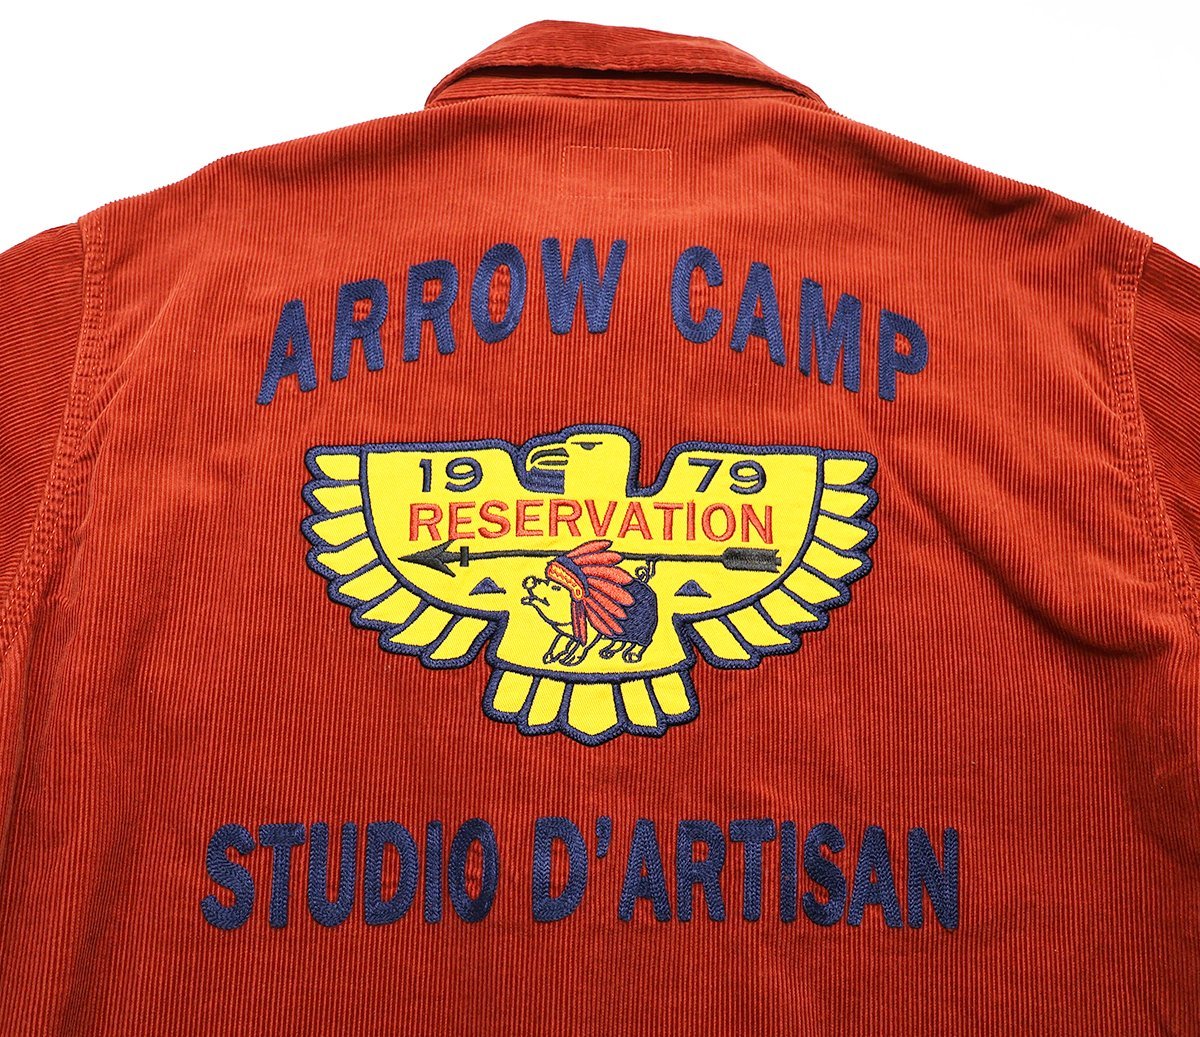 Studio D'artisan (ステュディオダルチザン) Corduroy Jacket / コーデュロイジャケット “ARROW CAMP” Lot 4548 美品 オレンジ size 42_画像7